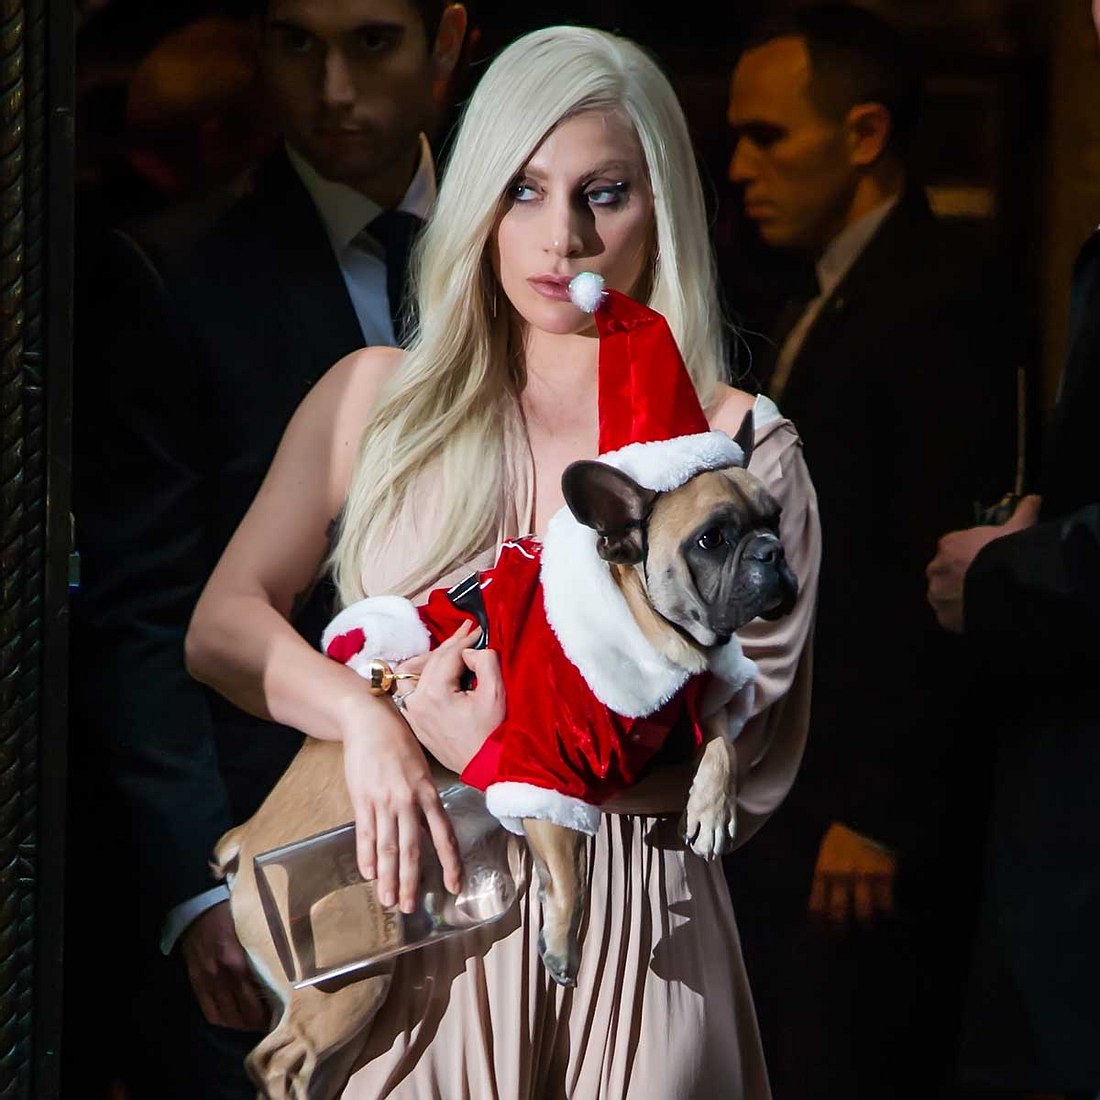 Stars, die entführt wurden: Lady Gagas Hunde wurden gekidnappt!